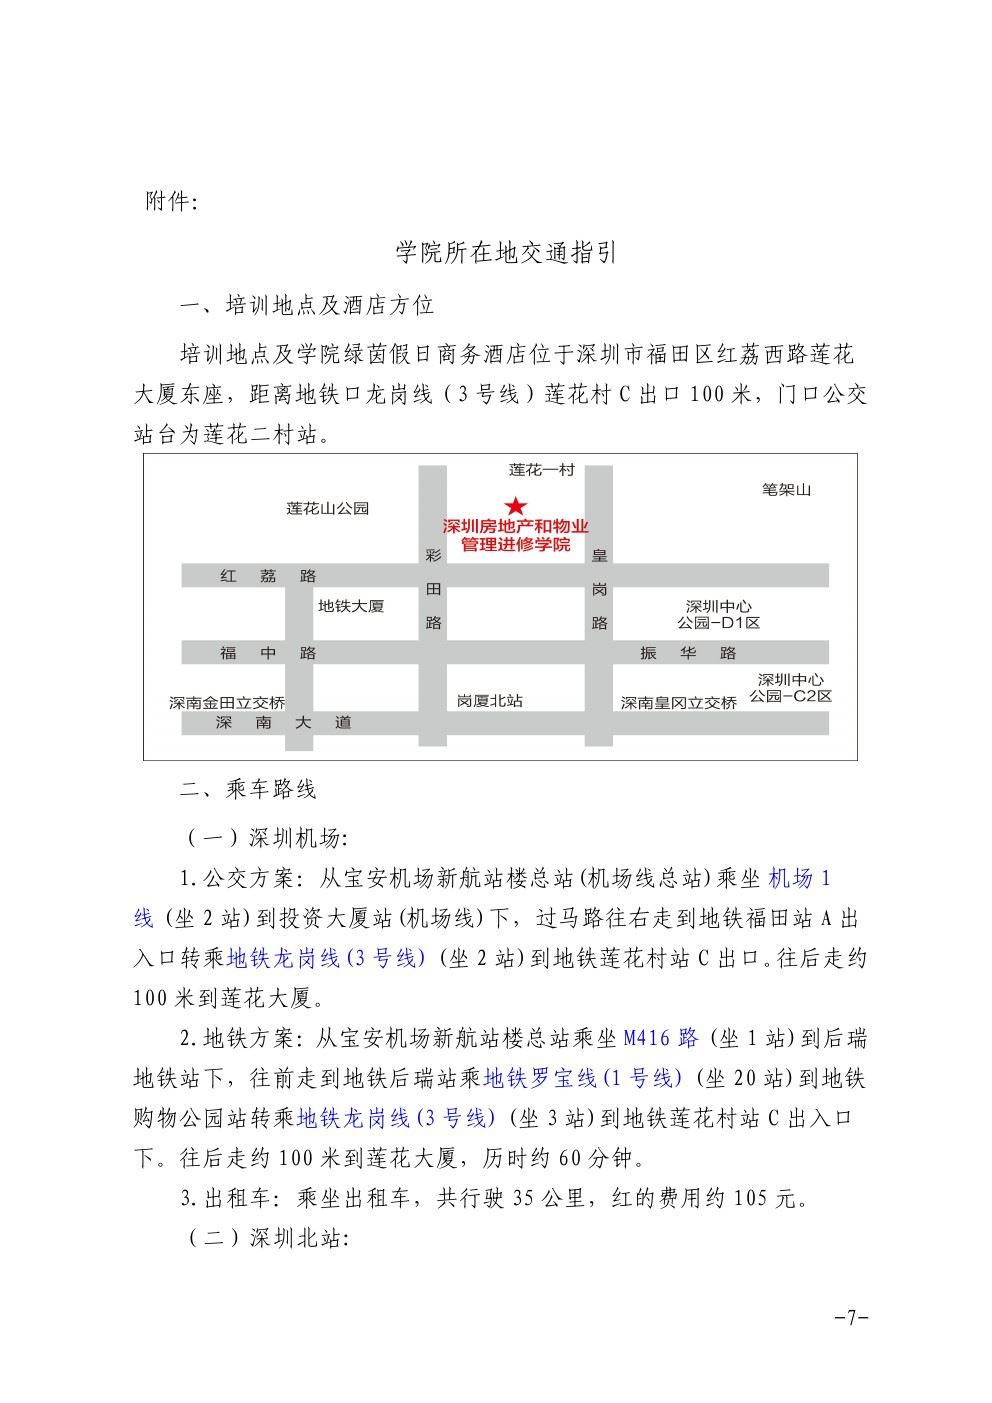 关于在深圳举办石材护理技术项目经理培训班的通知7-乐虎体育直播